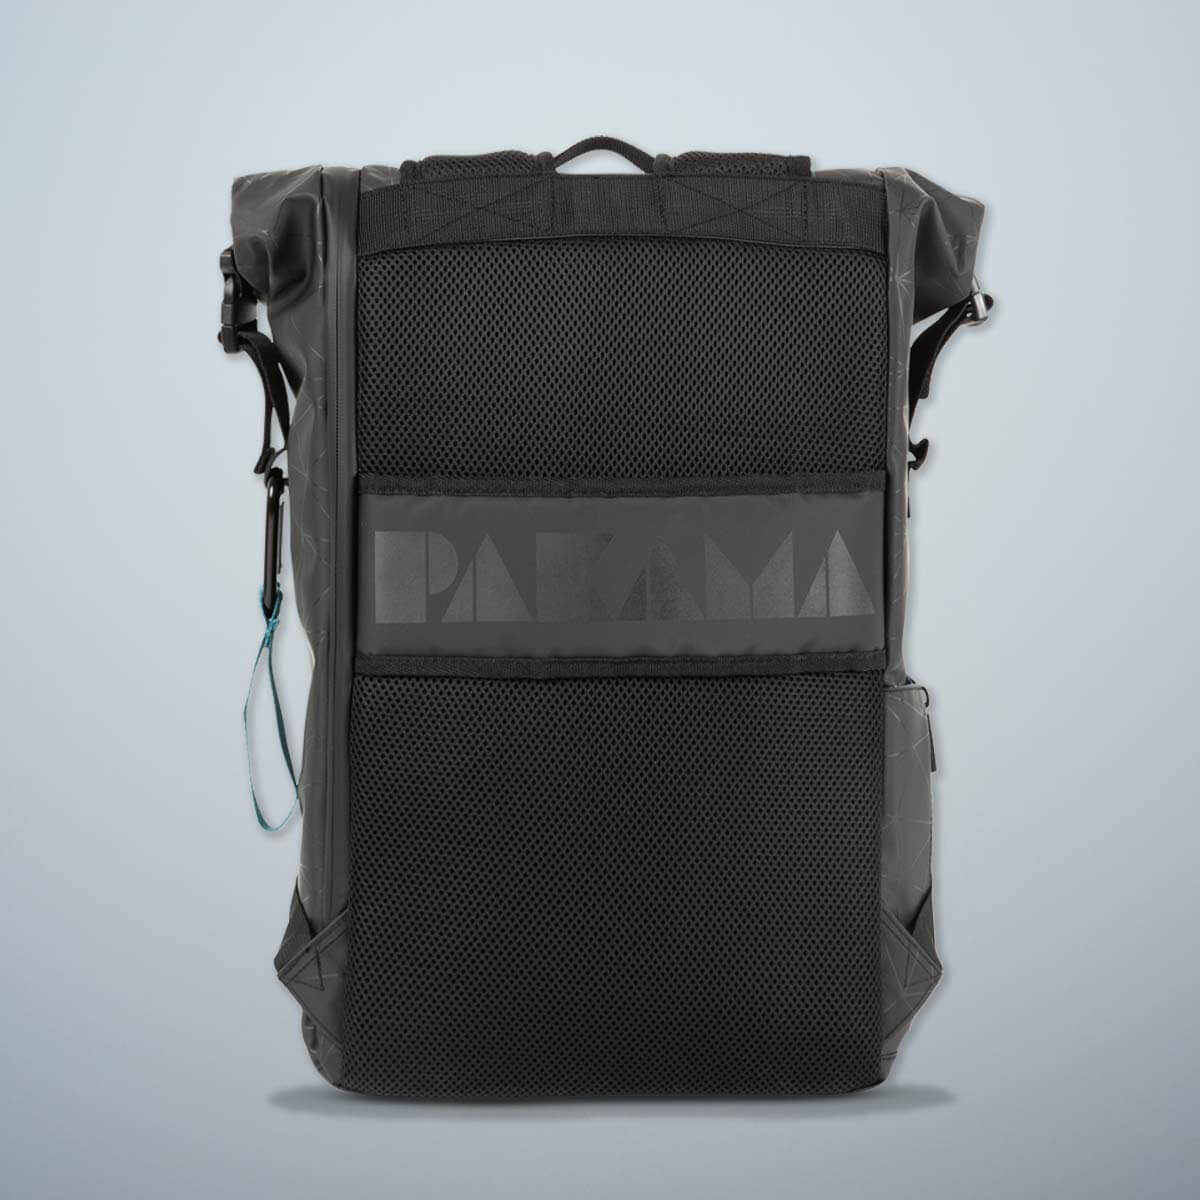 PAKAMA-fitnessrucksack-schwarz-koffergurt